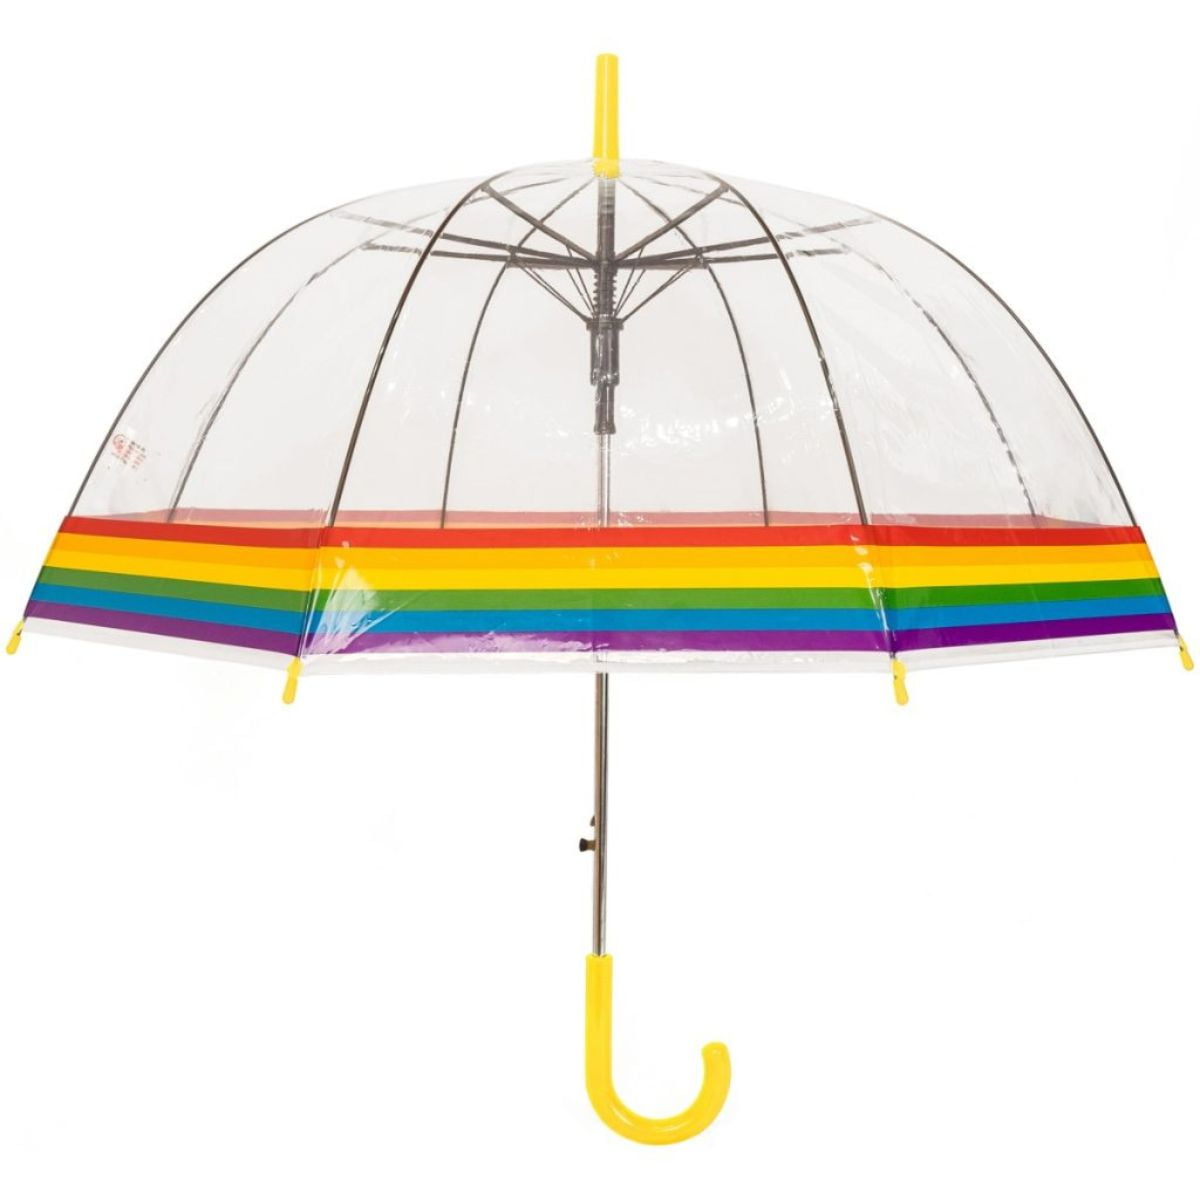 Adult umbrella